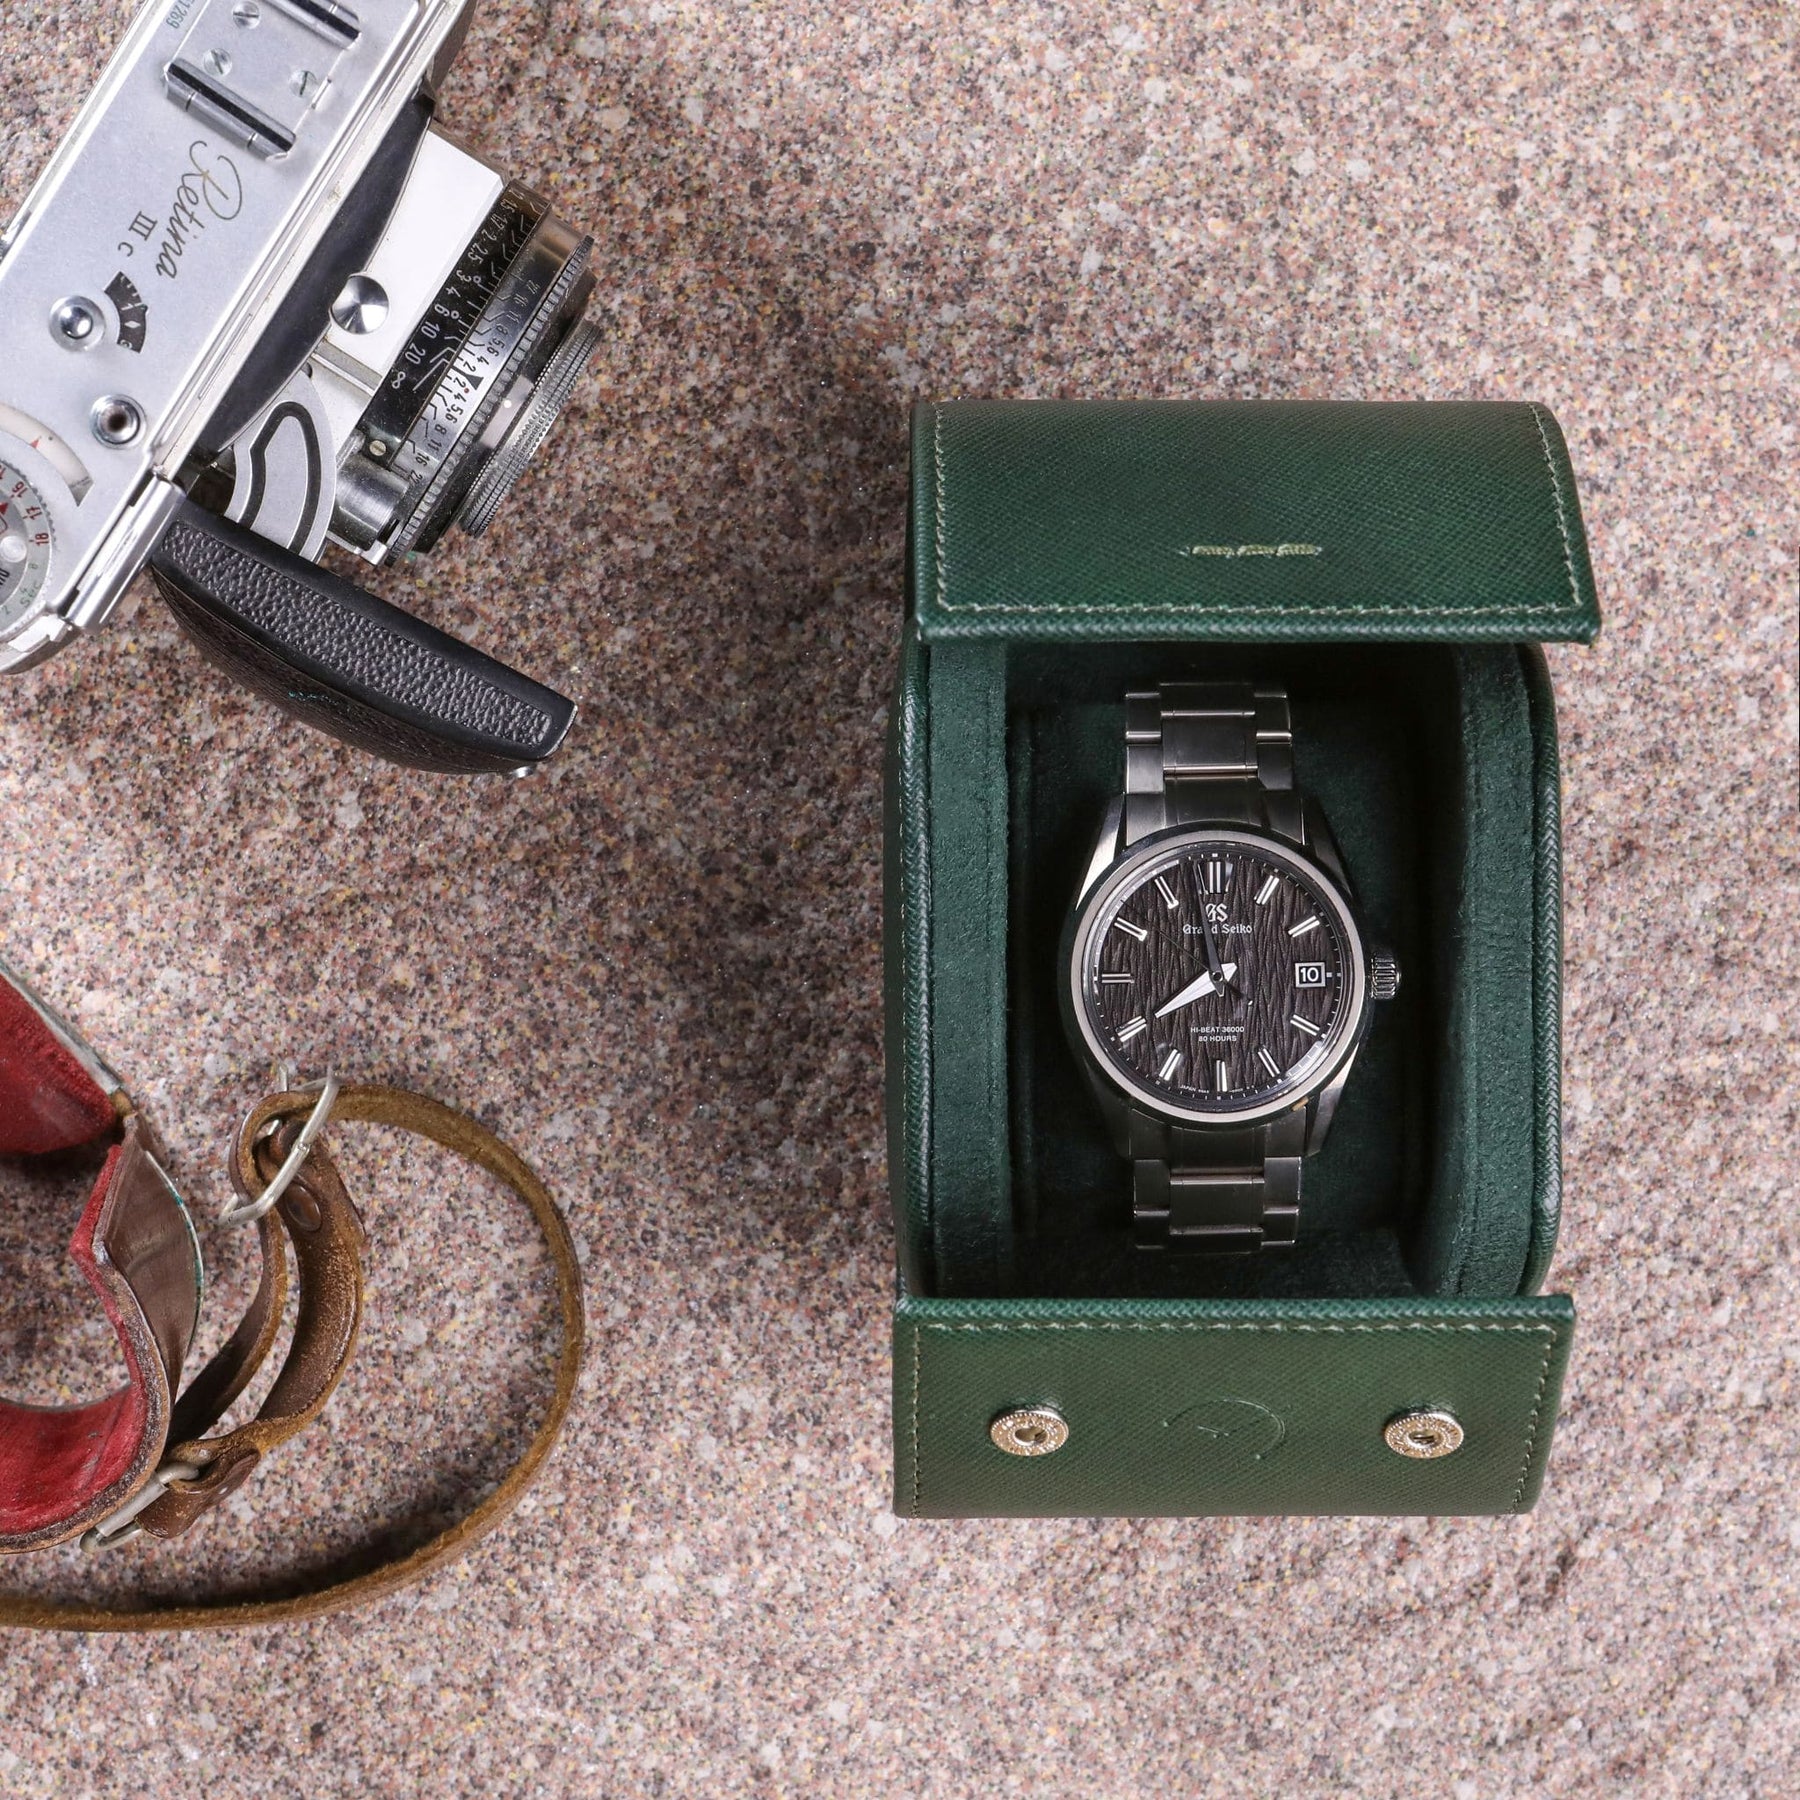 Roll porta orologi da 1 orologio in pelle saffiano verde con ricamo verde selva e Grand Seiko al suo interno